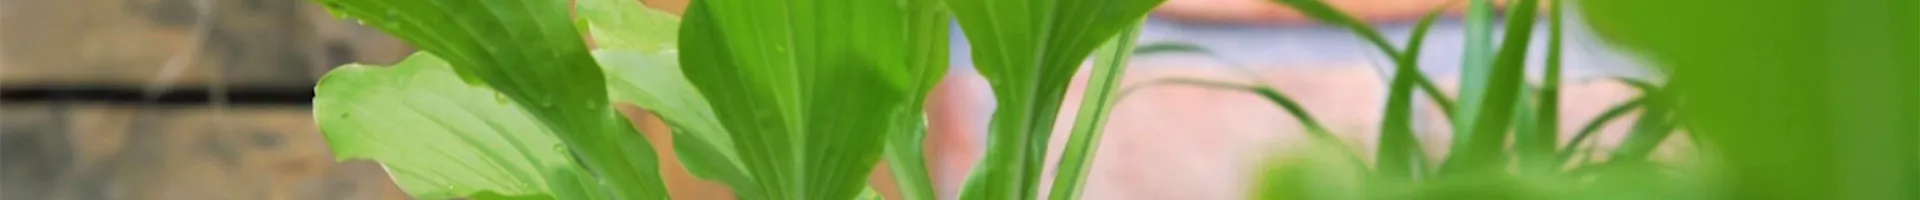 Funkie - Einpflanzen im Garten (Thumbnail).jpg